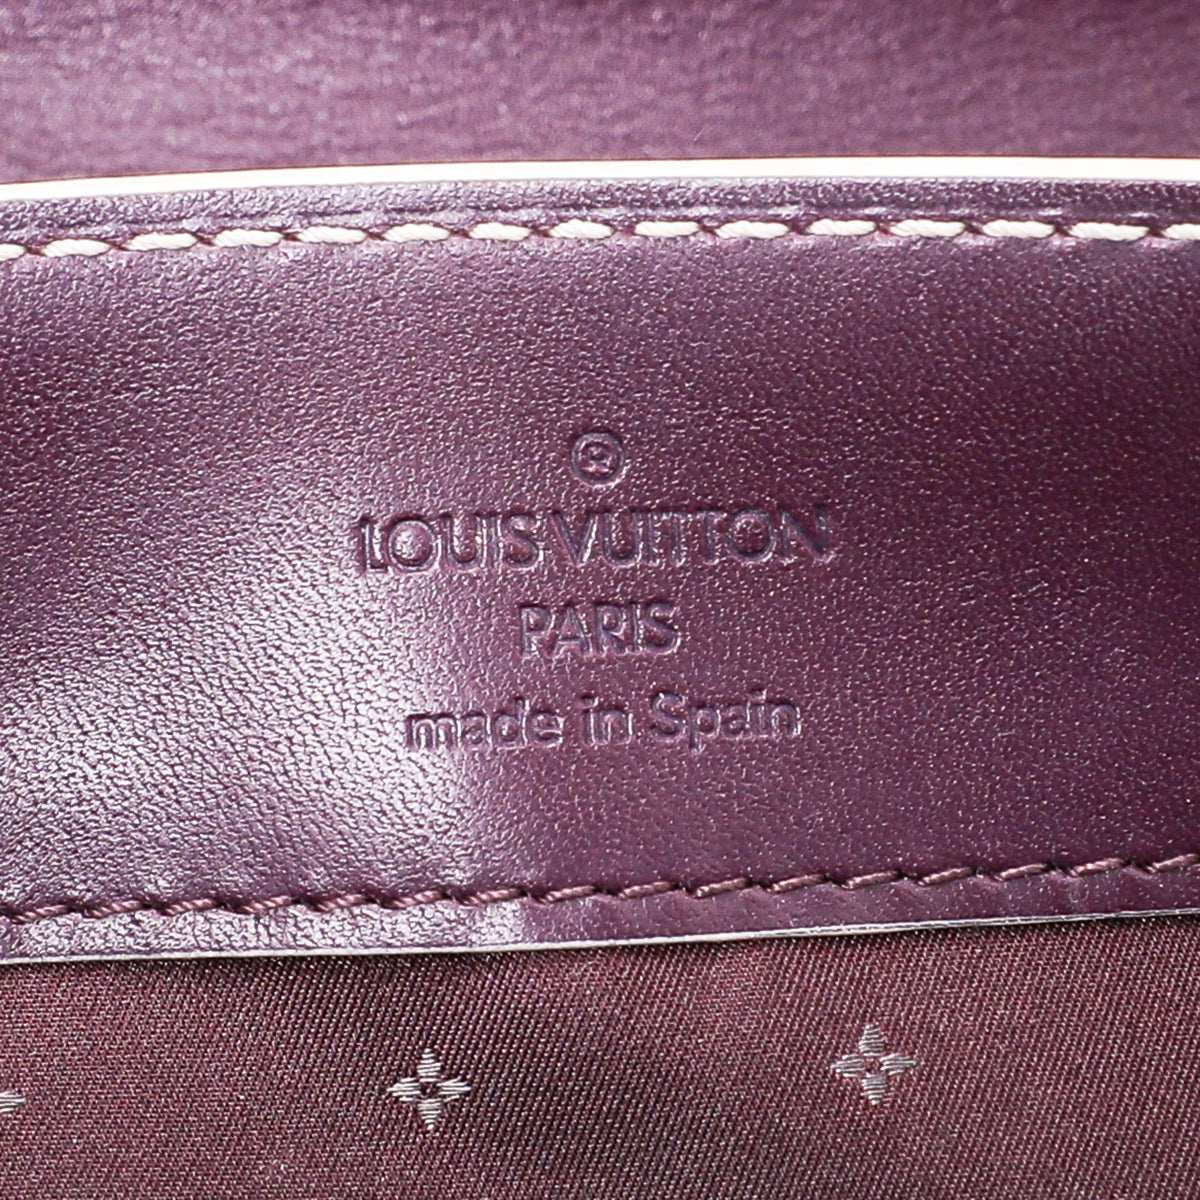 Louis Vuitton Plum Suhali Leather Le Talentueux Bag - Yoogi's Closet